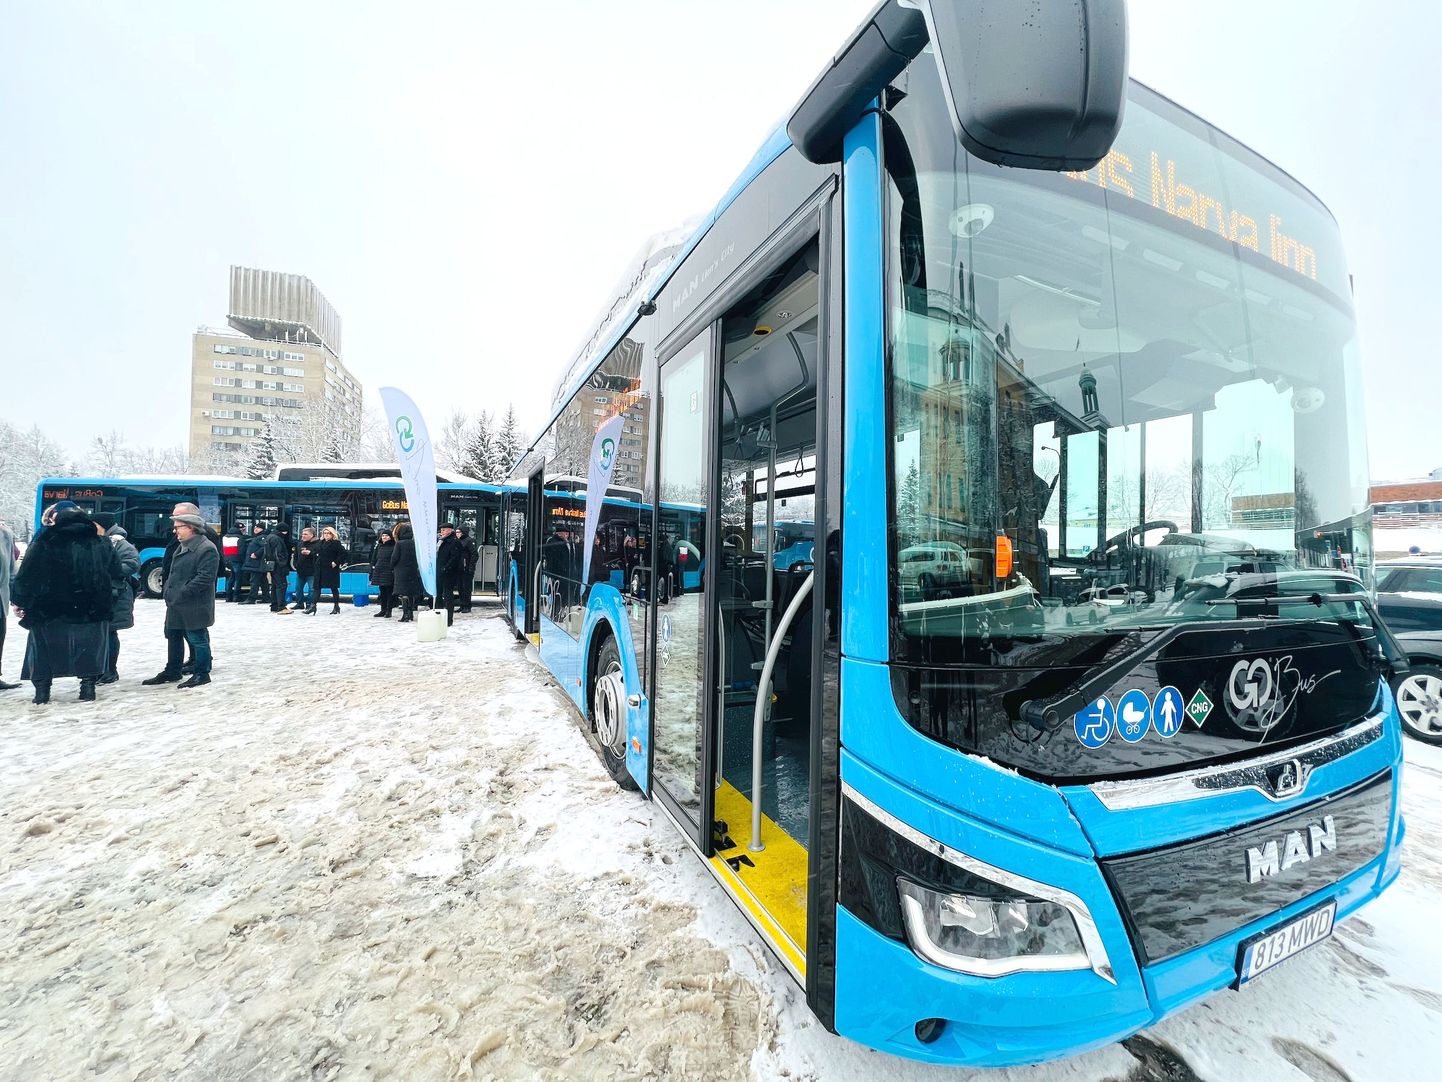 Alates veebruarist asus Narva bussiliine teenindama firma GoBus ning alles seejärel hakkasid kohalikud võimud põhjalikku ühistranspordireformi ette valmistama.